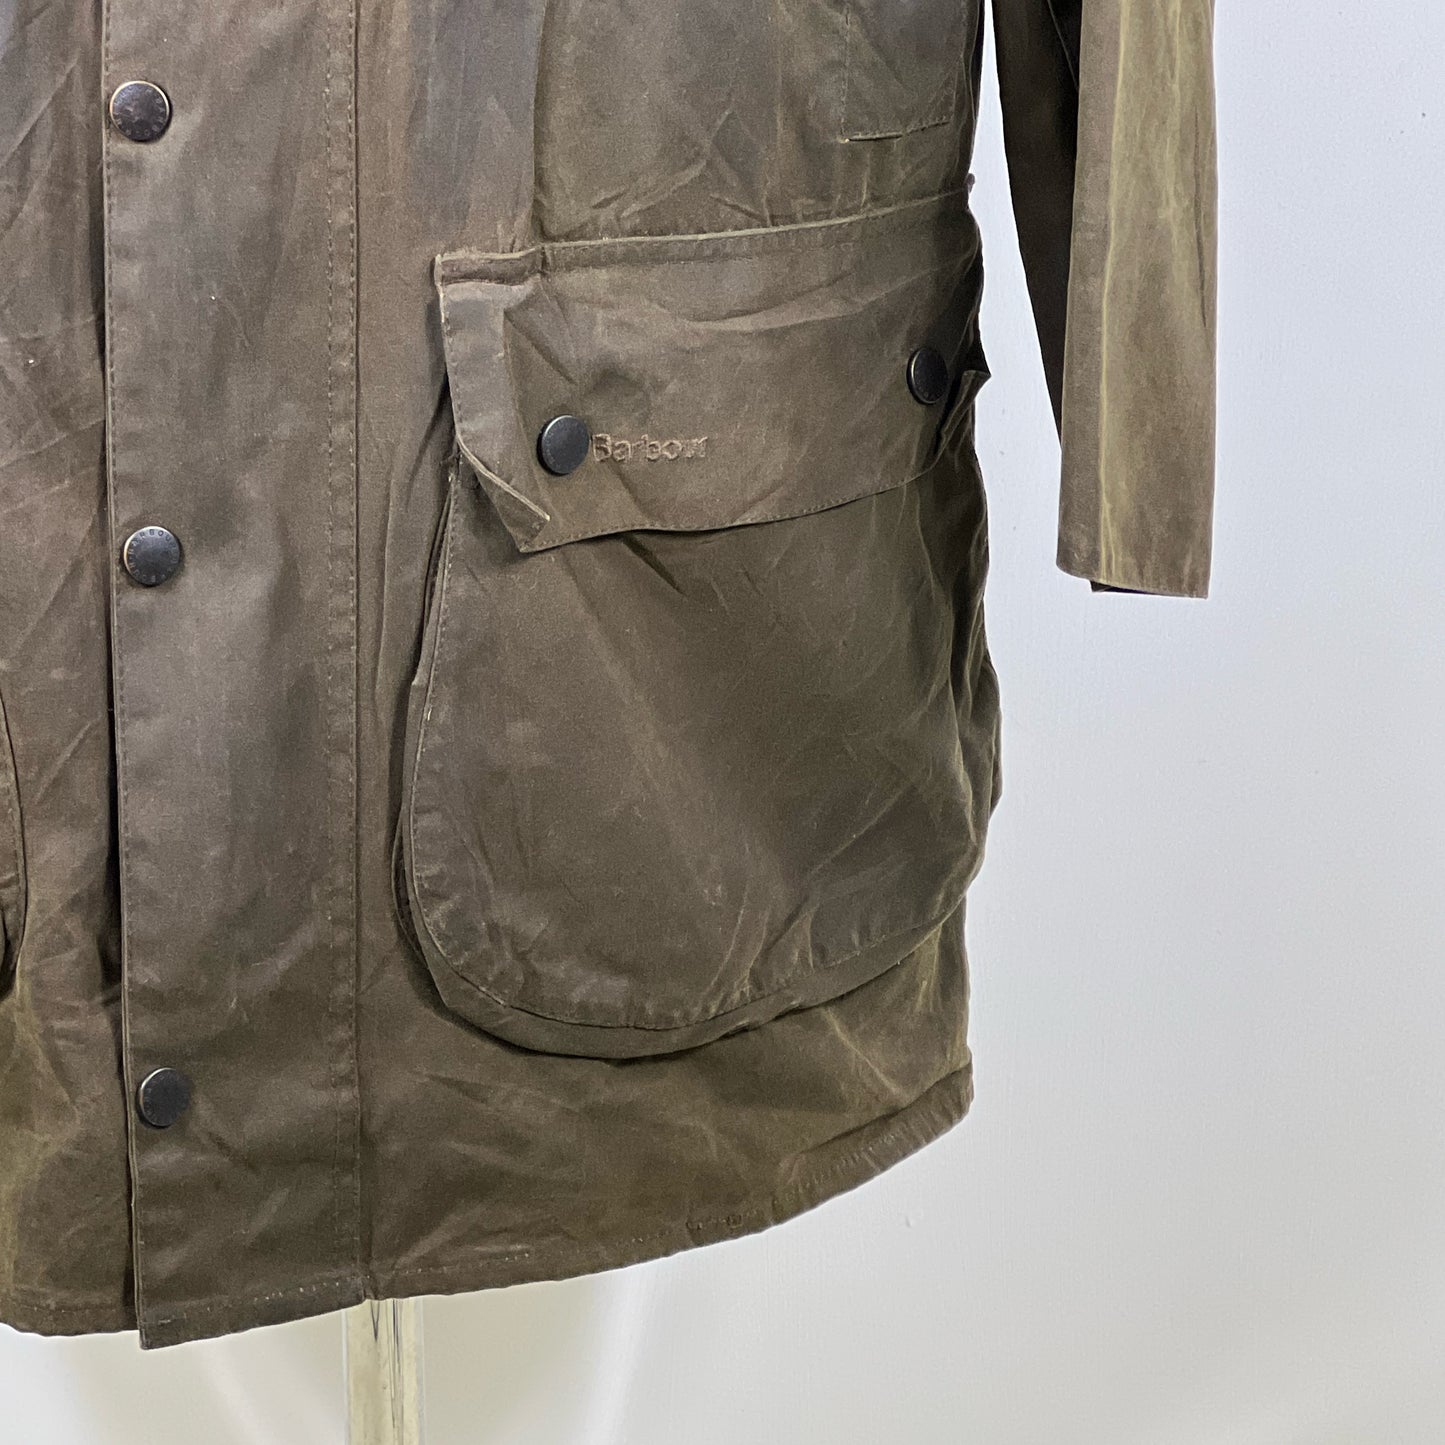 Giacca Barbour Northumbria Oliva C42/107 cm-Man Olive Northumbria Waxed Jacket Large